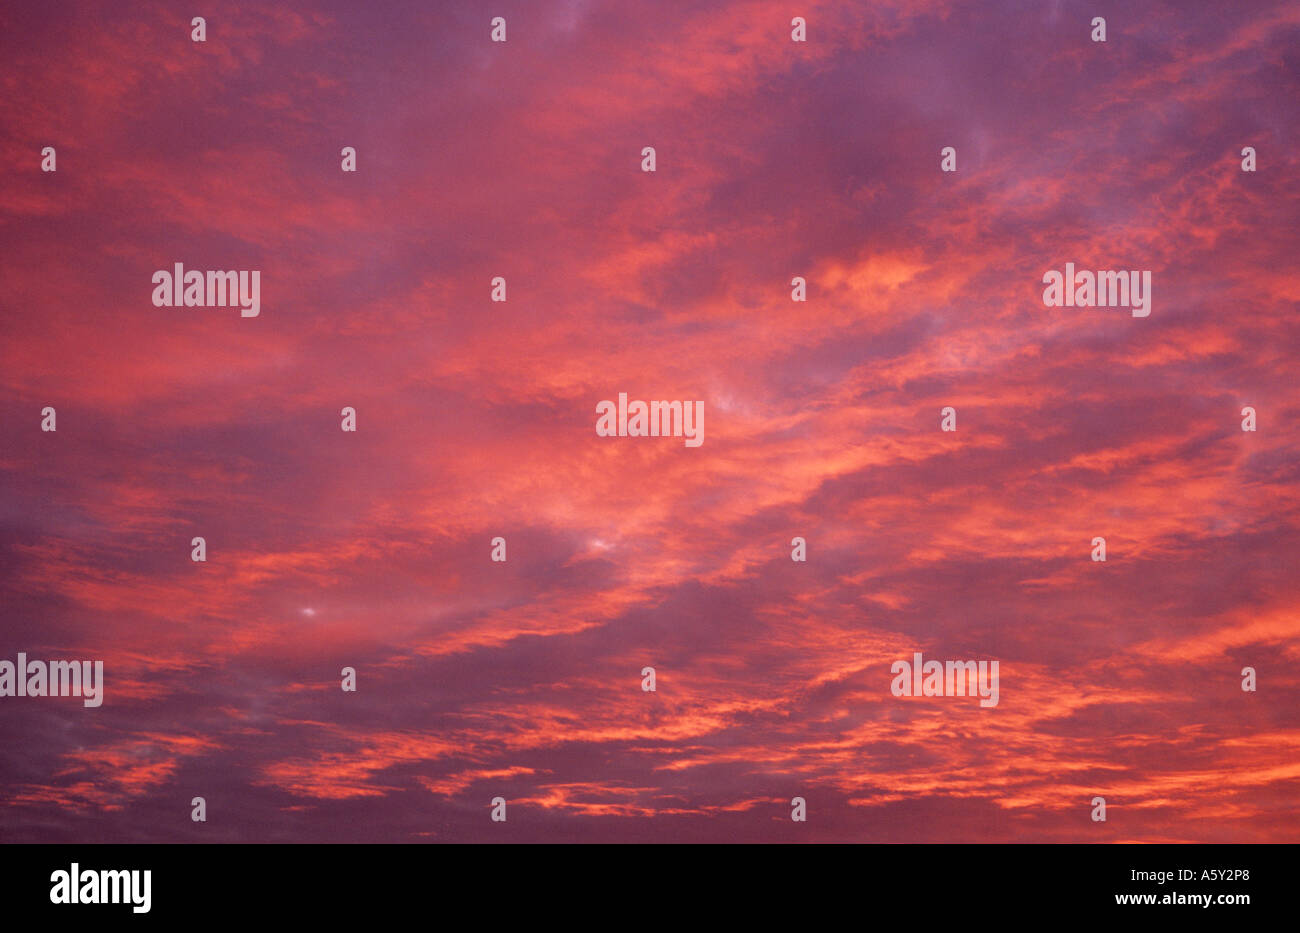 Feurige rote Stratocumulus und Cirrus-Wolken bei Sonnenuntergang Stockfoto